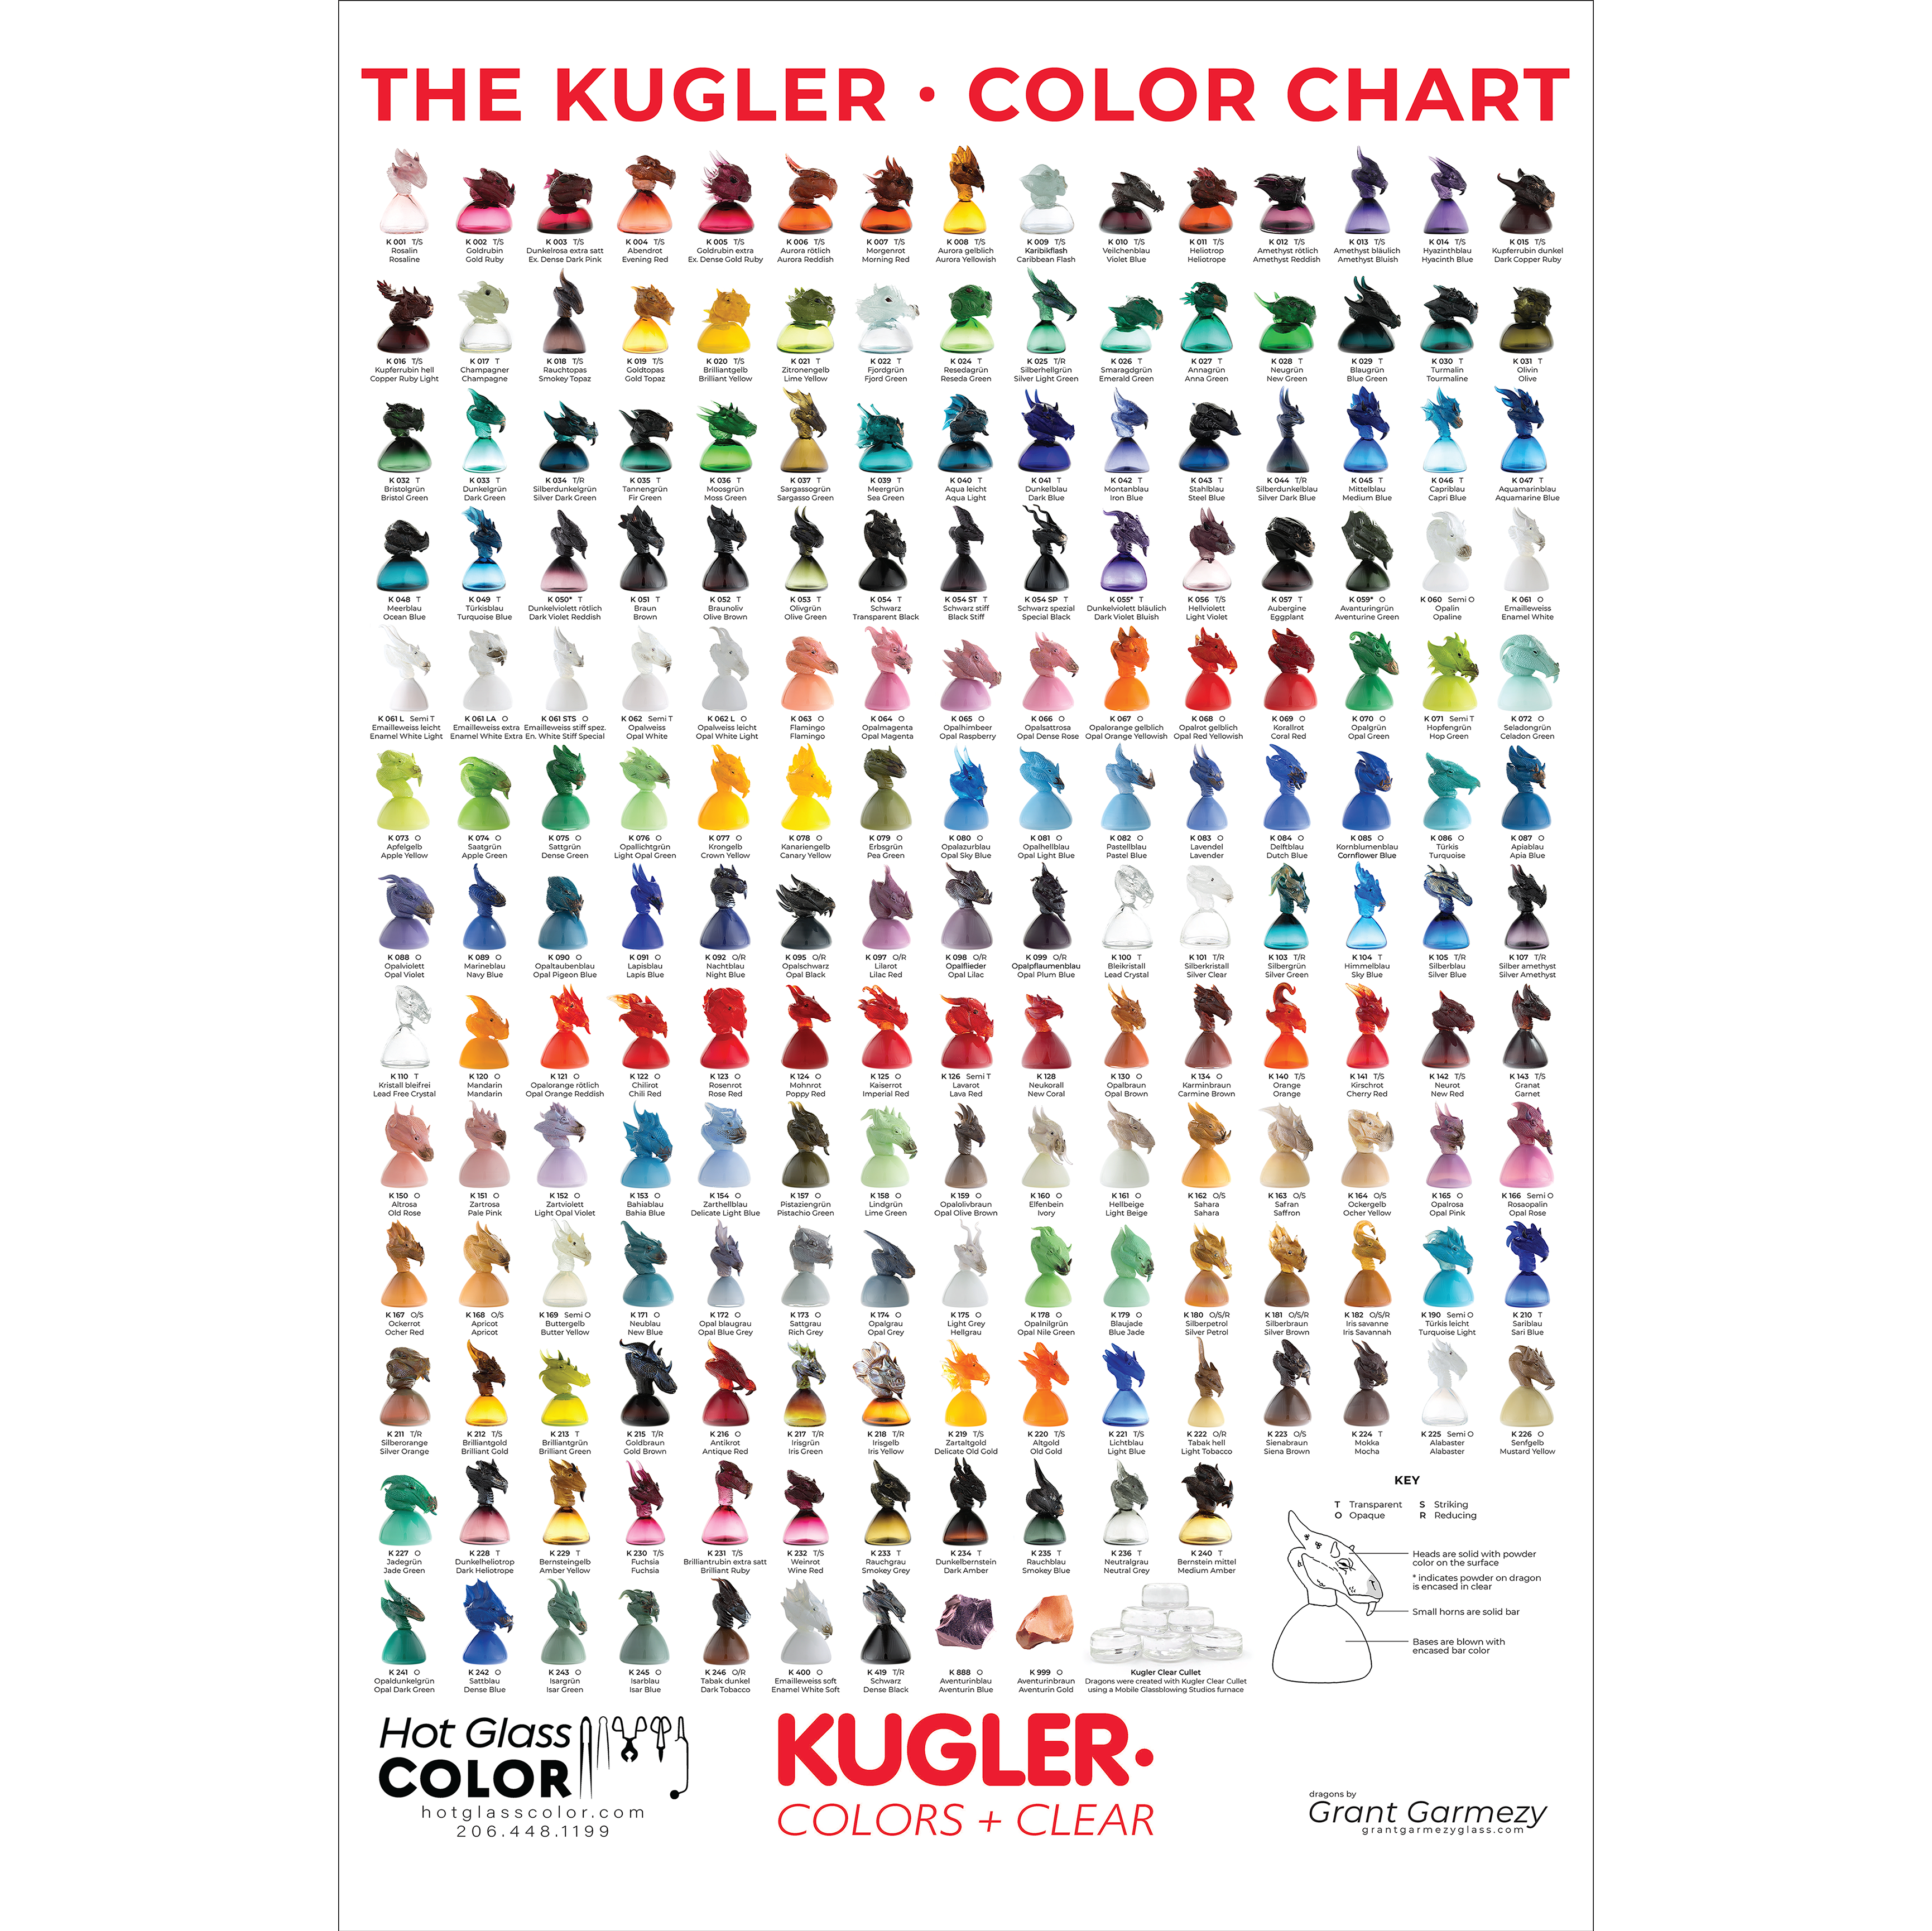 https://hotglasscolor.com/wp-content/uploads/2020/12/Kugler-Poster-logo-11x17-2020.12.8.png